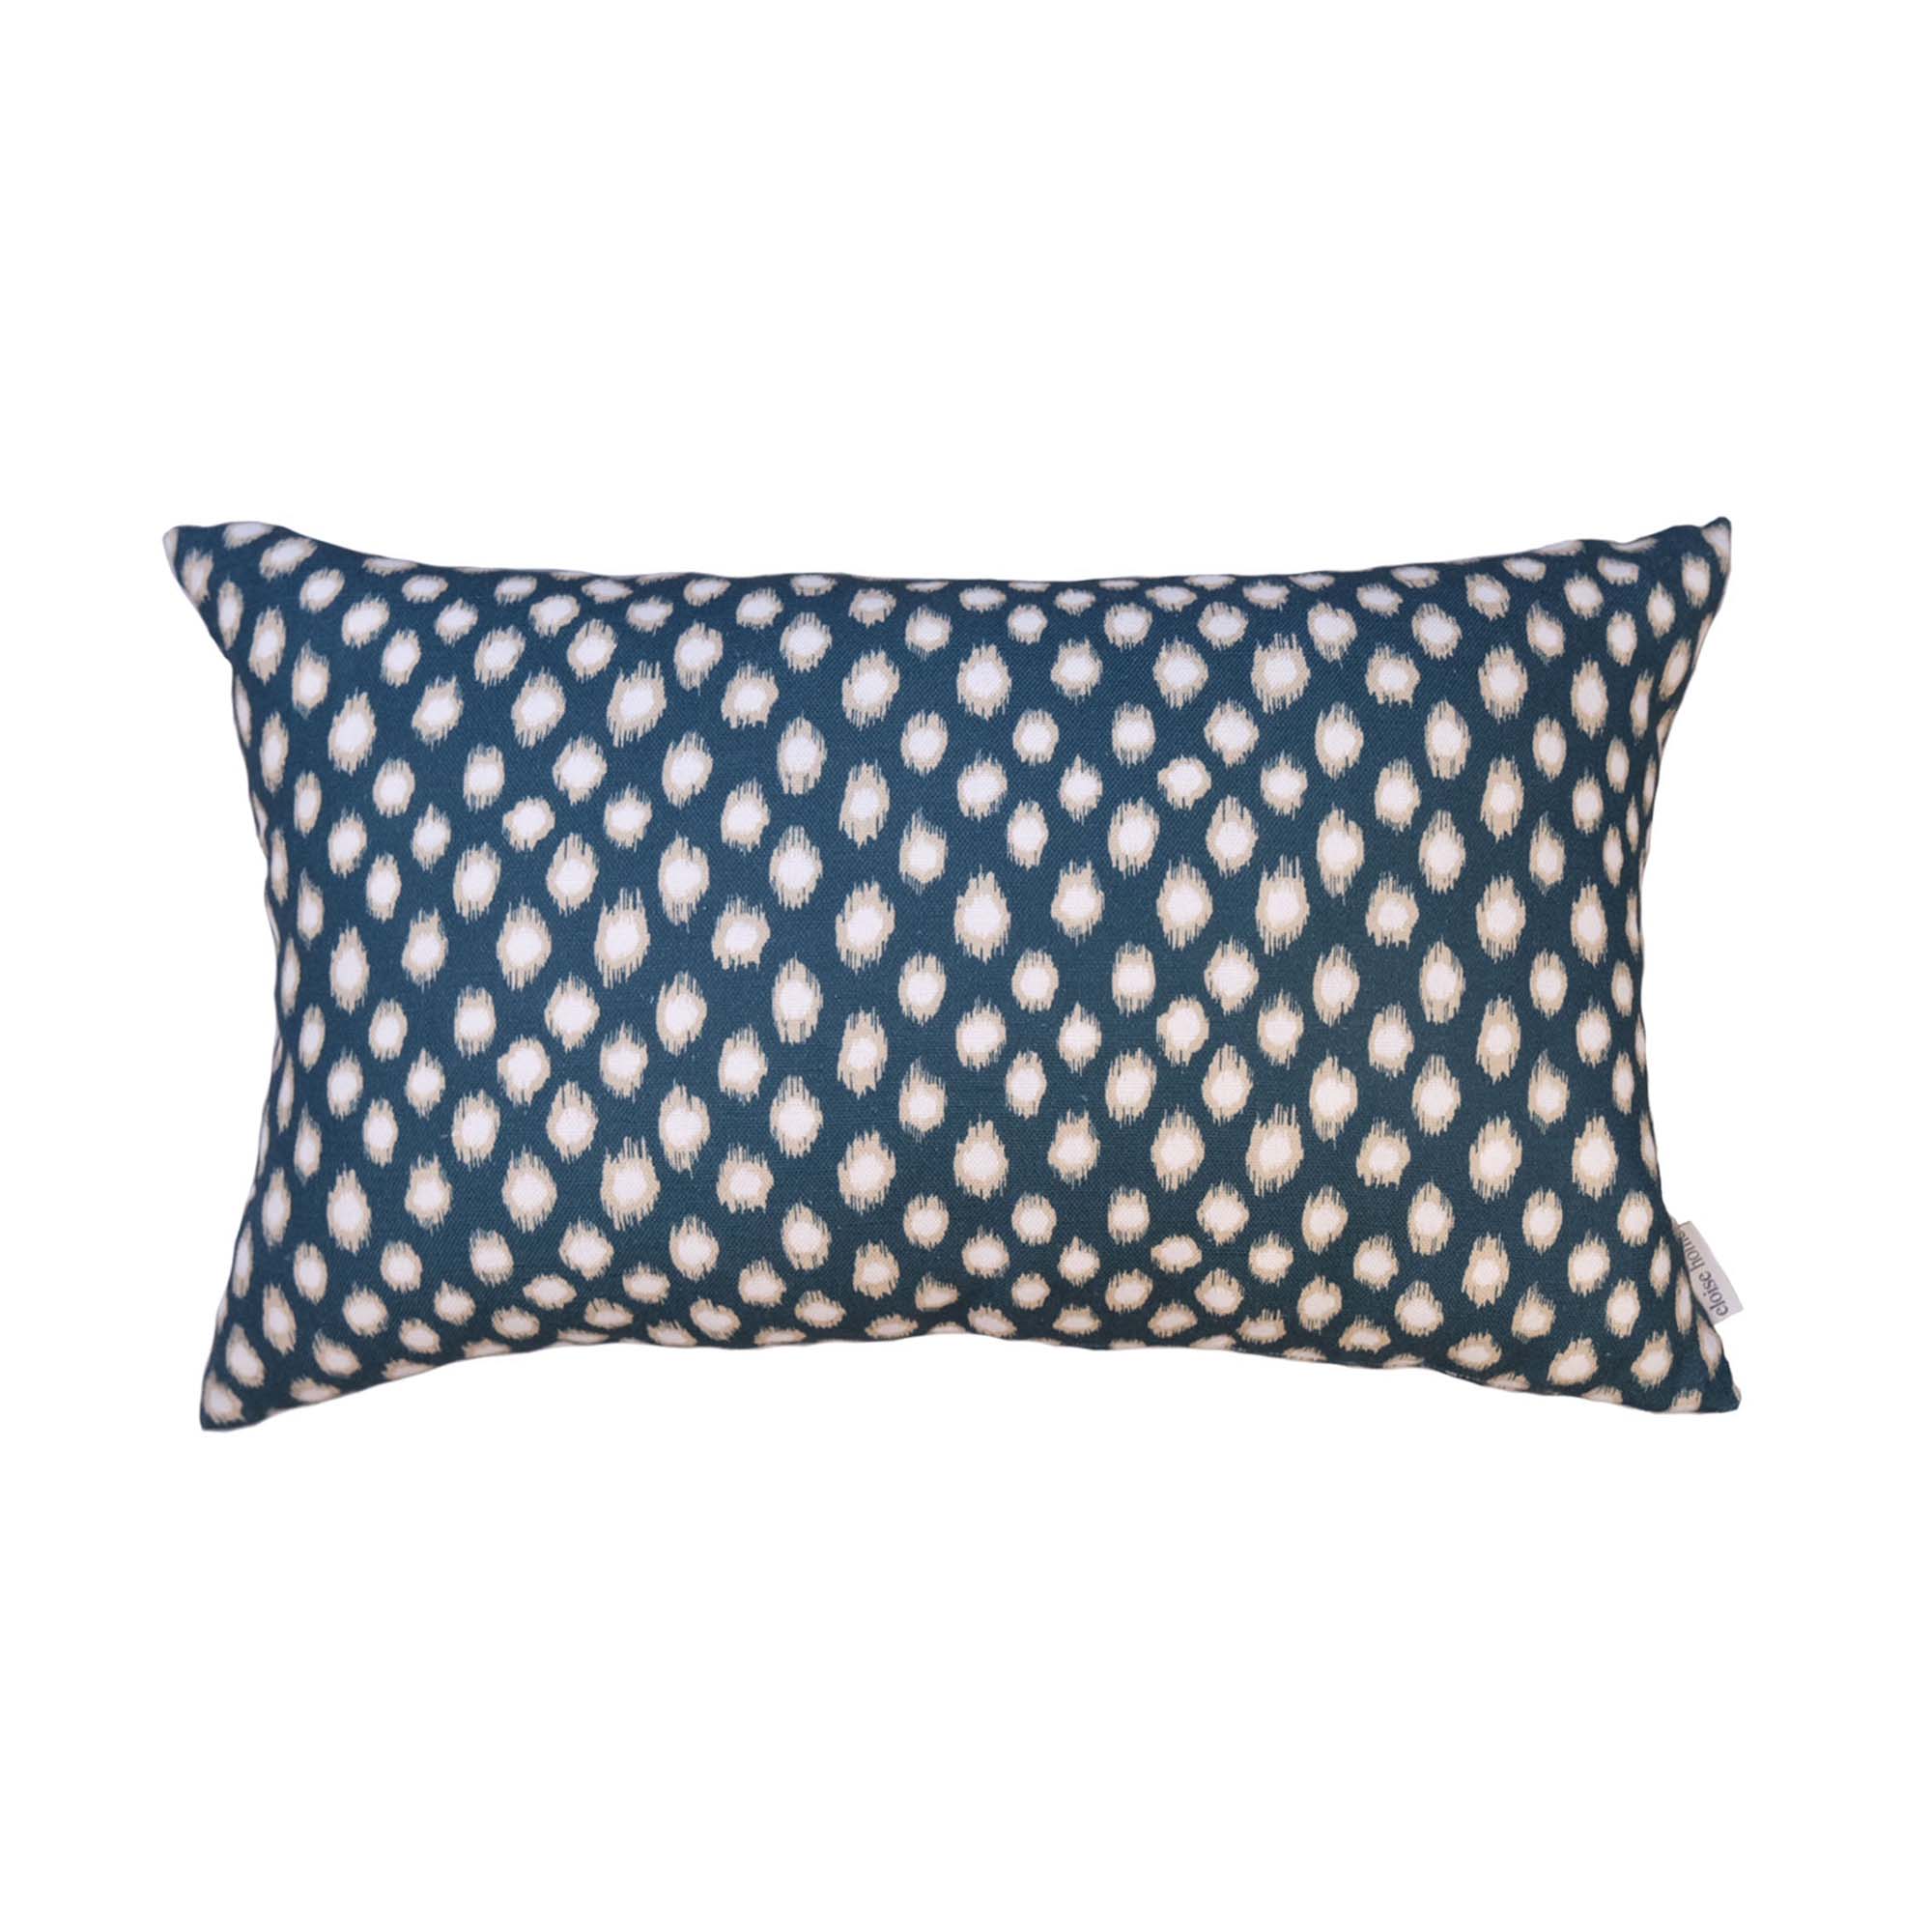 Polka Dot Lumbar Cushion | Navy & Cream